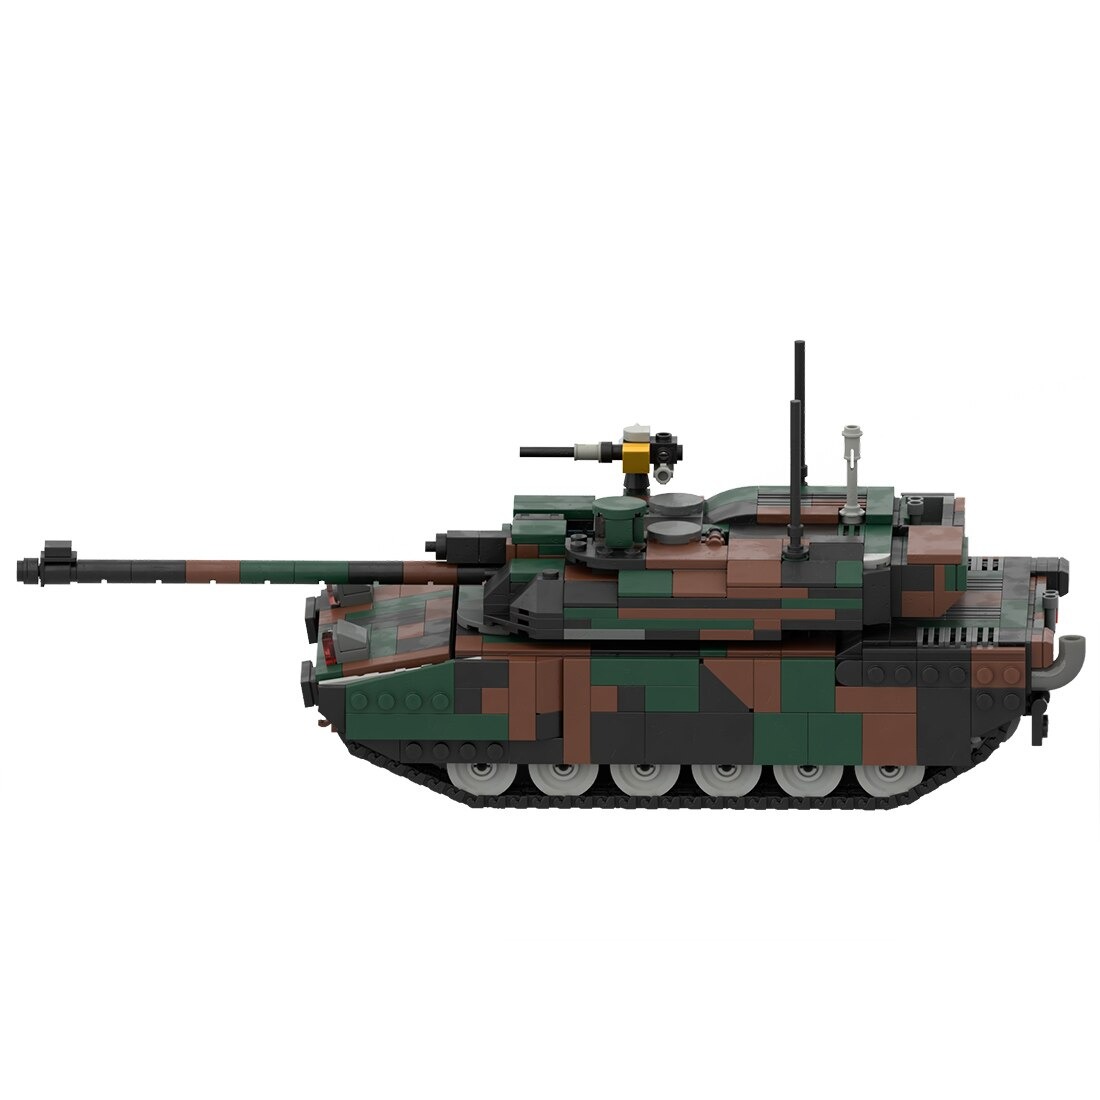 moc 34858 leclerc main battle tank model main 3 - SUPER18K Block